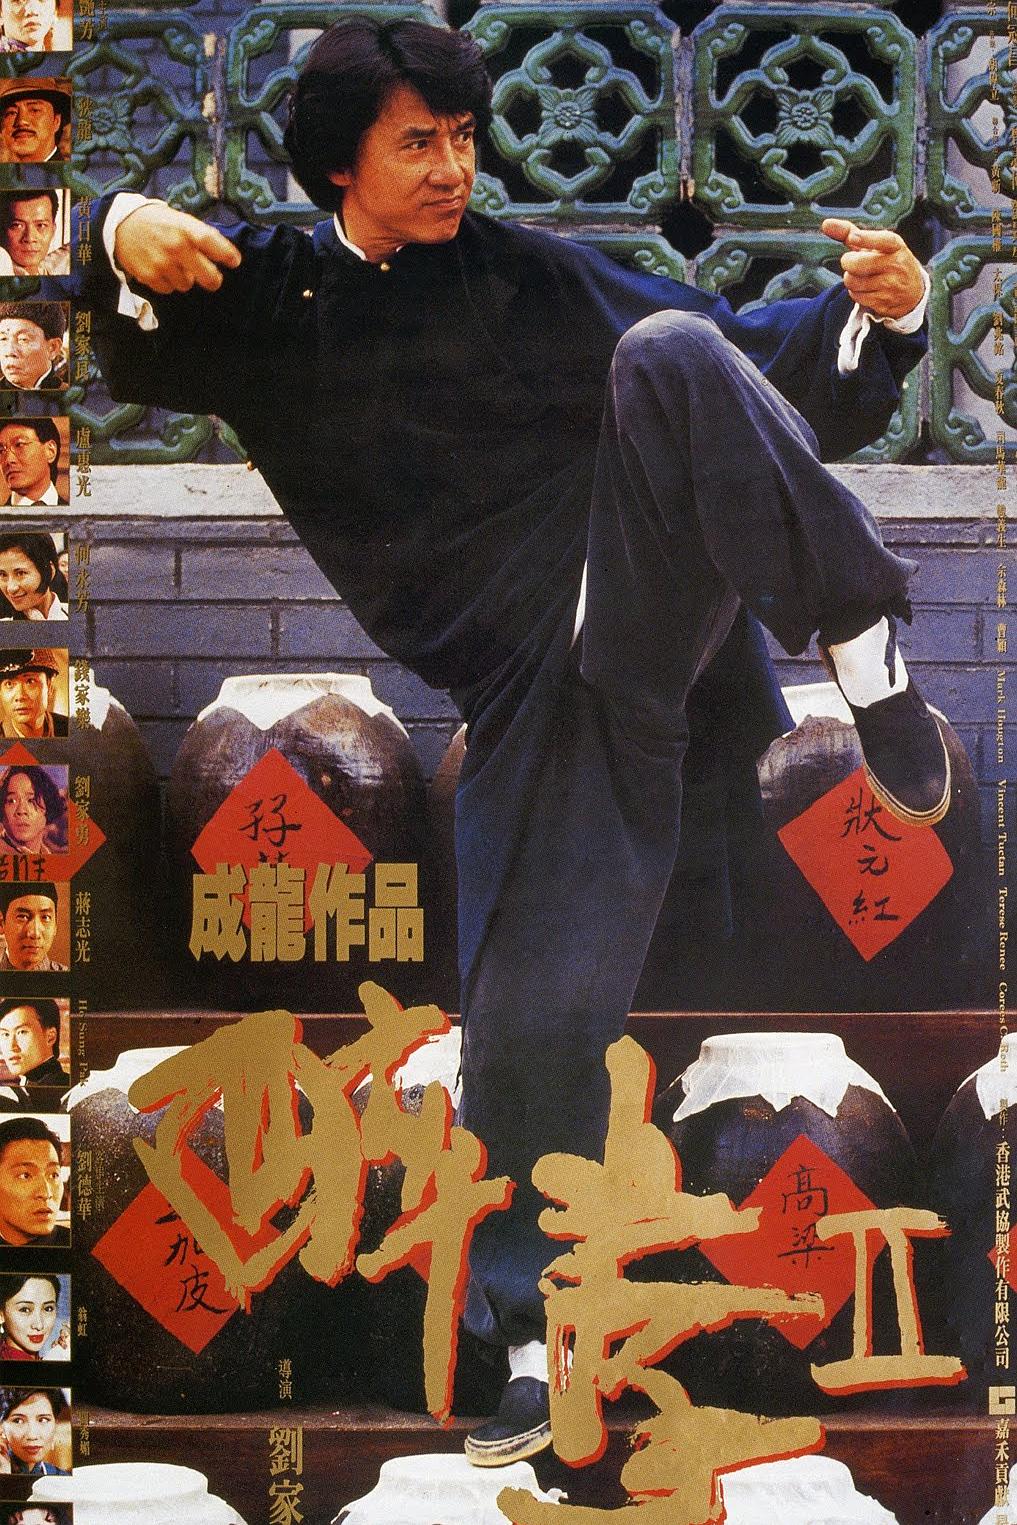 醉拳Ⅱ Drunken.Master.II.1994.JAPANESE.DUBBED.1080p.BluRay.x264-REGRET 6.56GB-1.png